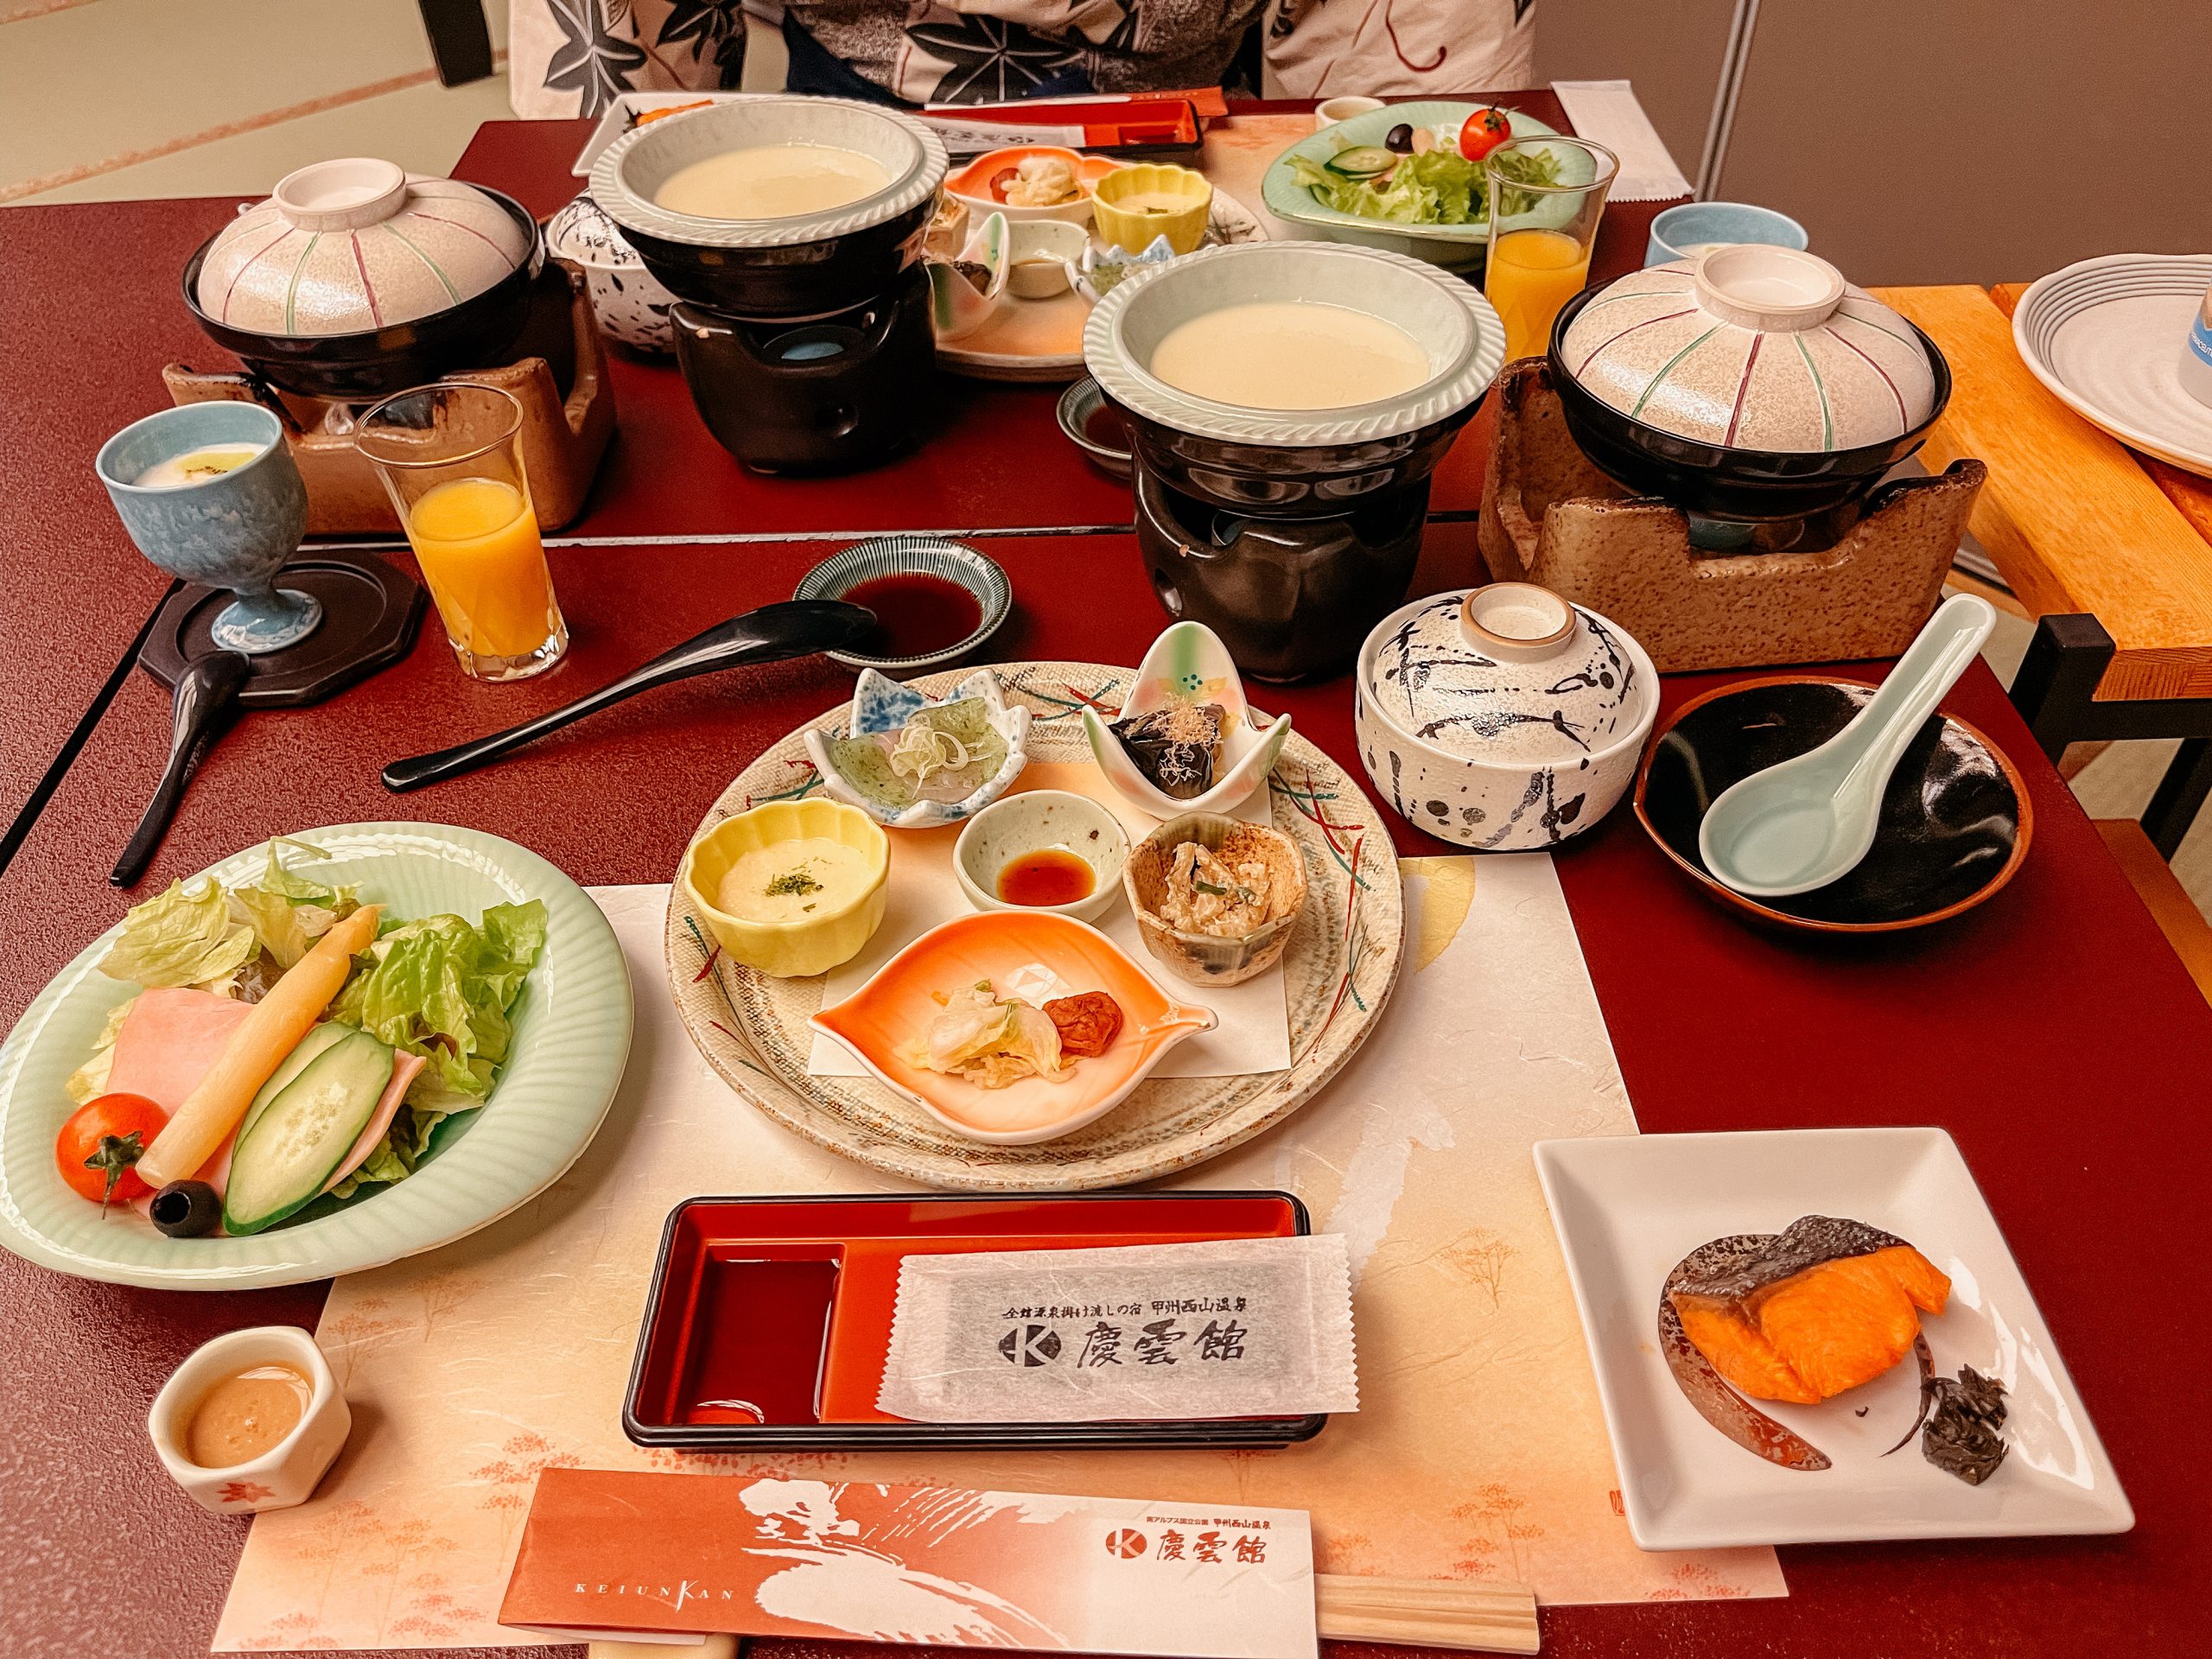 Breakfast at nishiyama onsen